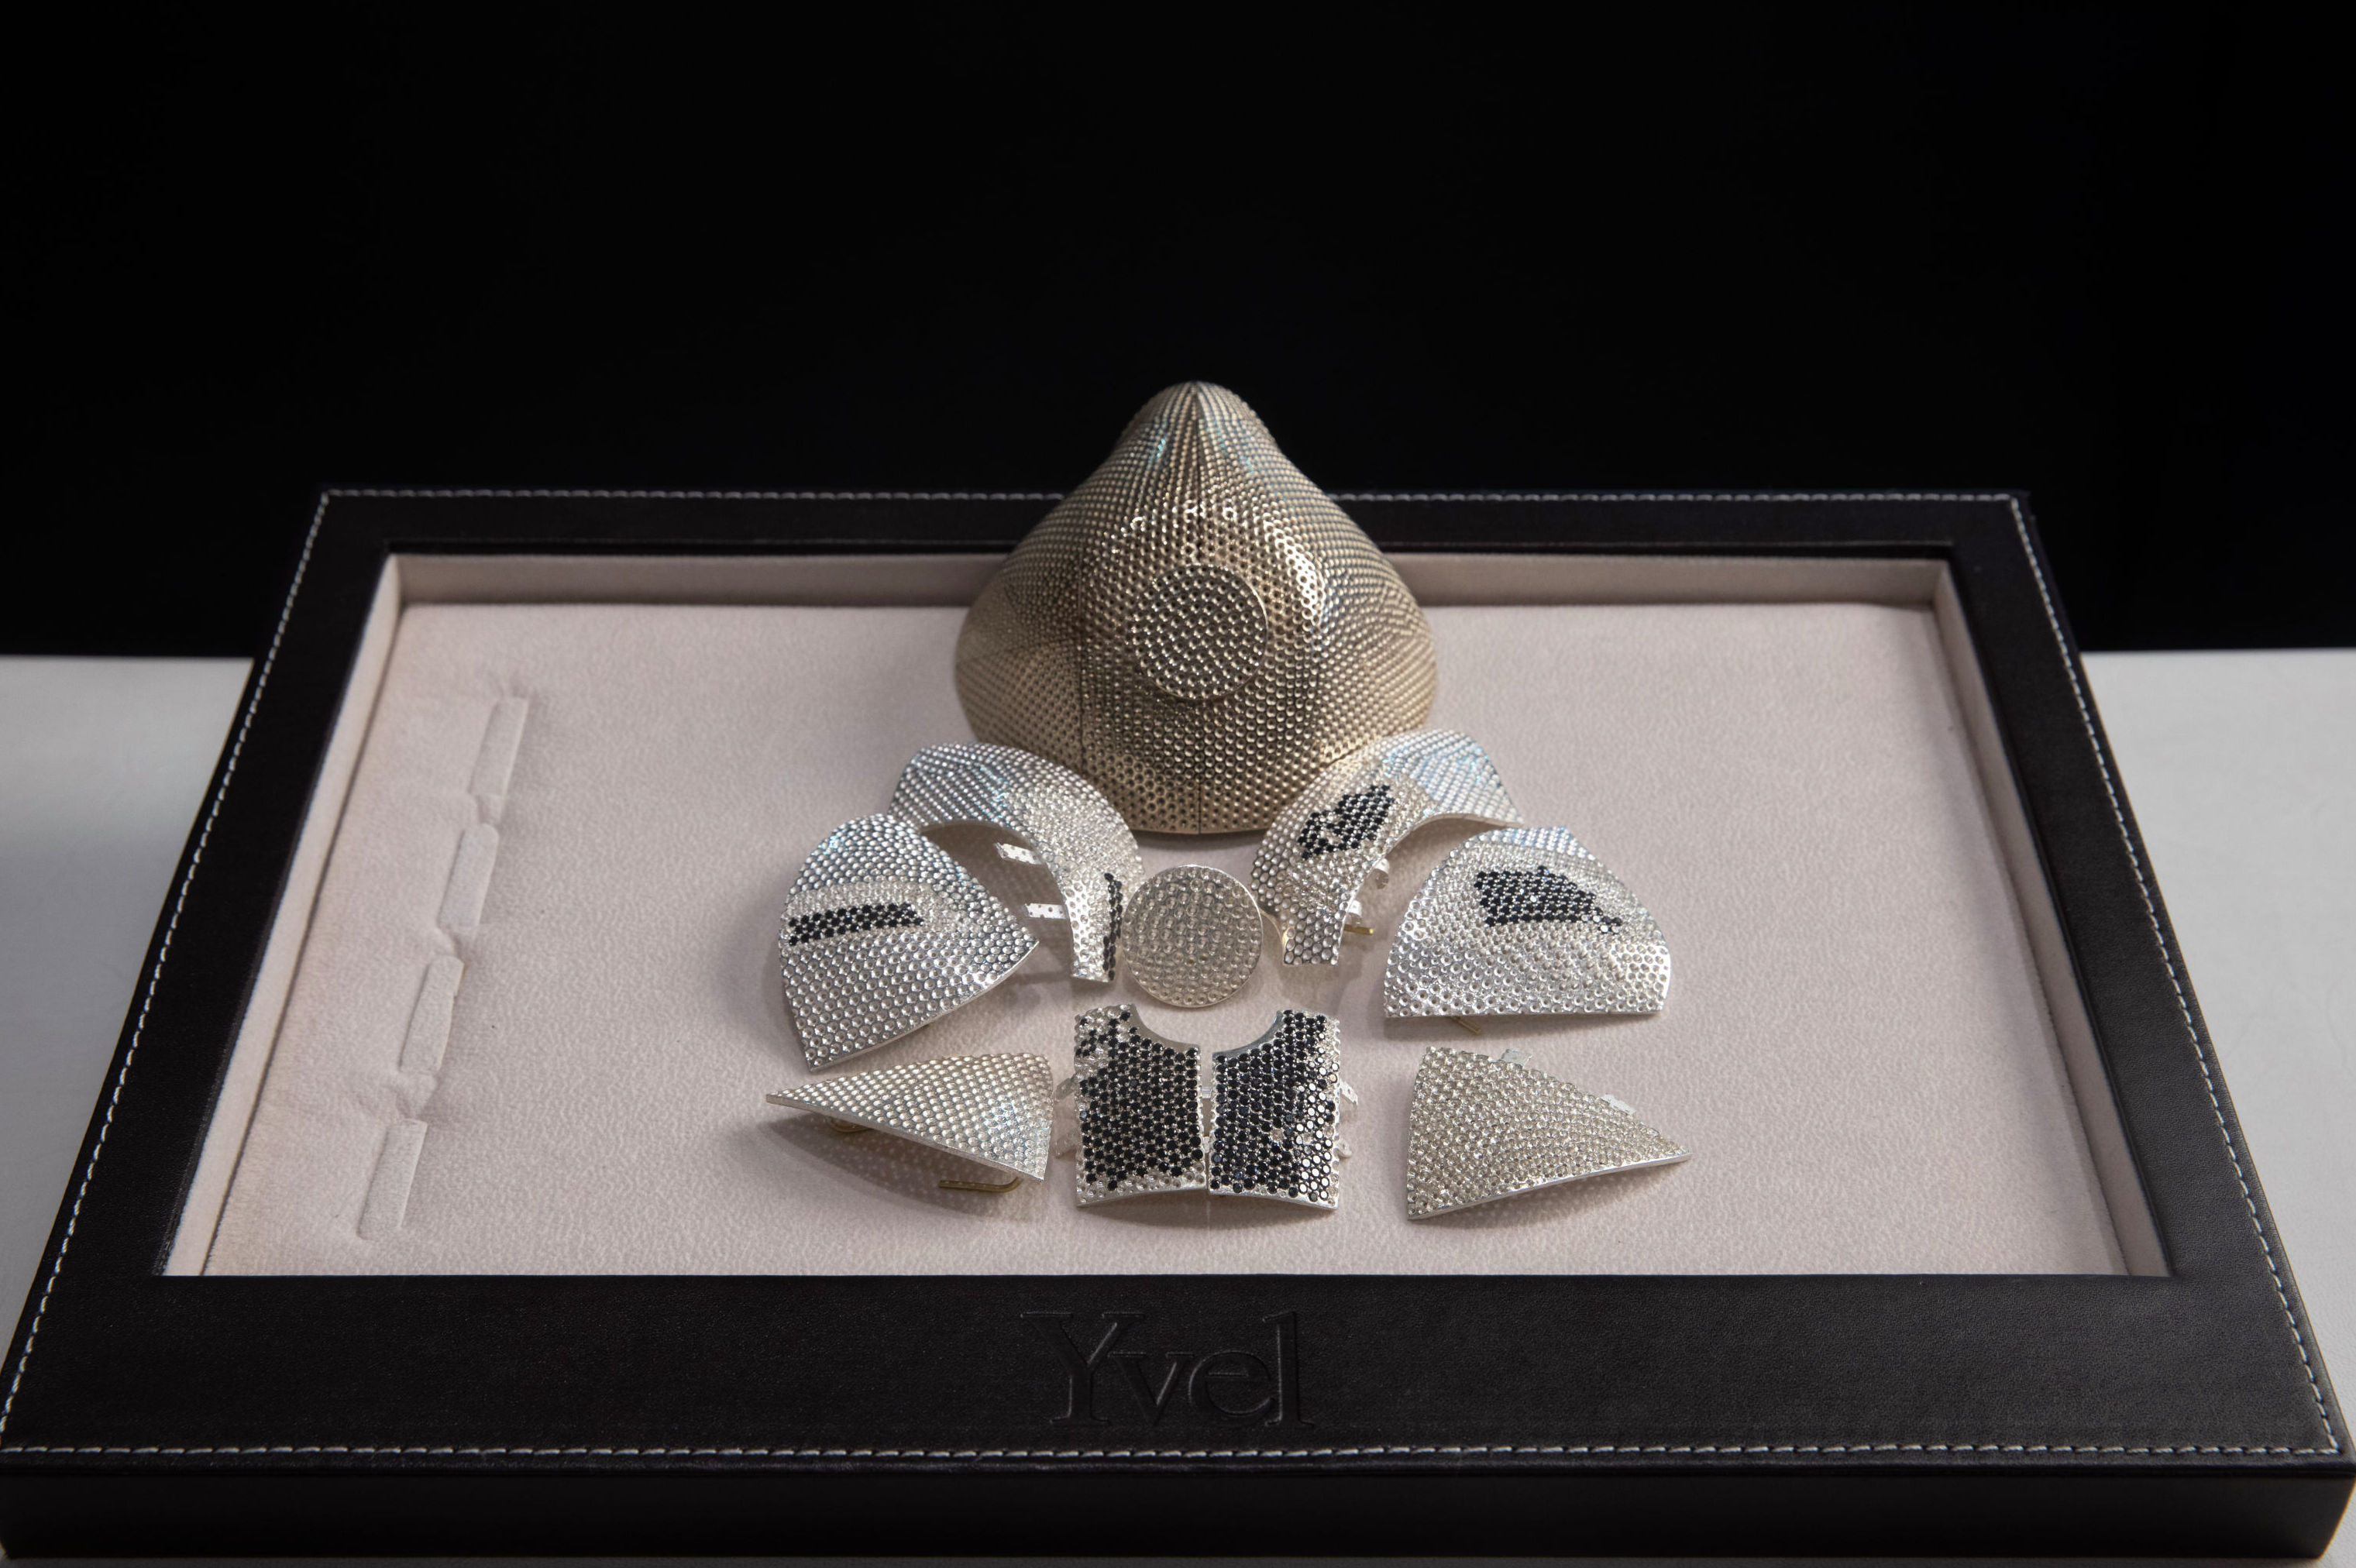 Самая дорогая защитная маска в мире - инкрустированная бриллиантами золотая маска стоимостью 1,5 миллиона долларов 